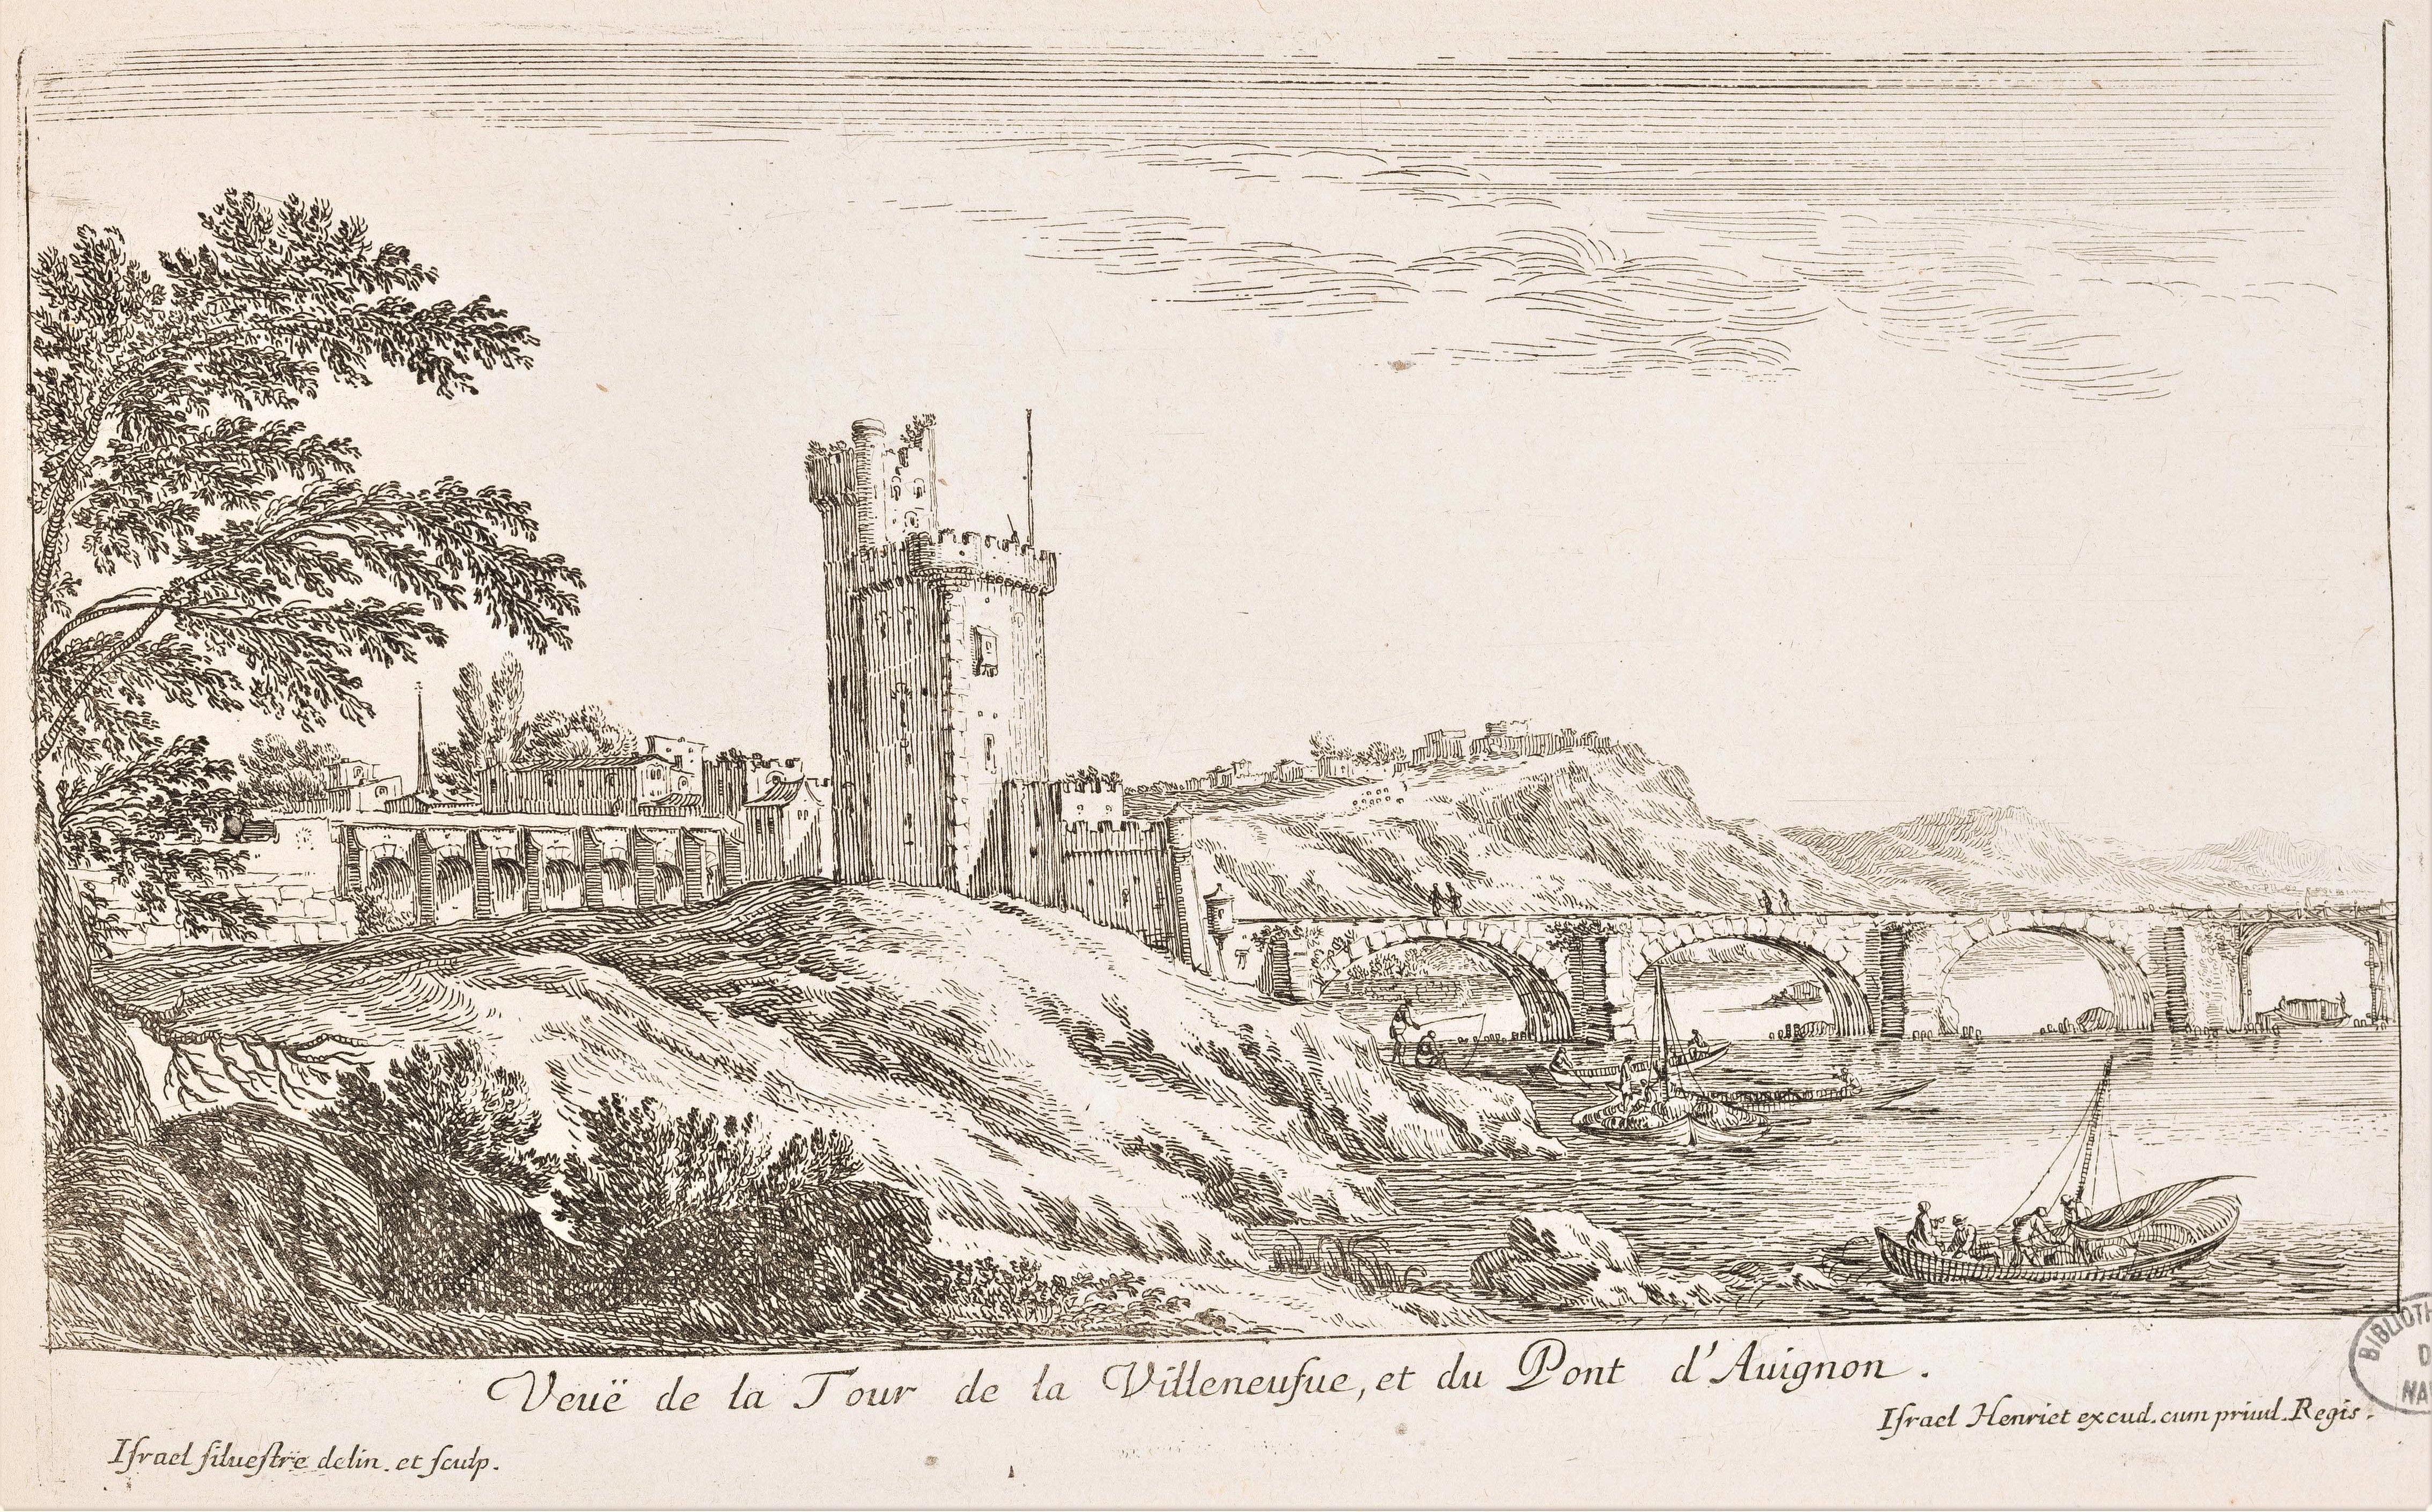 Israël Silvestre : Veuë de la Tour de la Villeneufue, et du Pont d'Avignon.